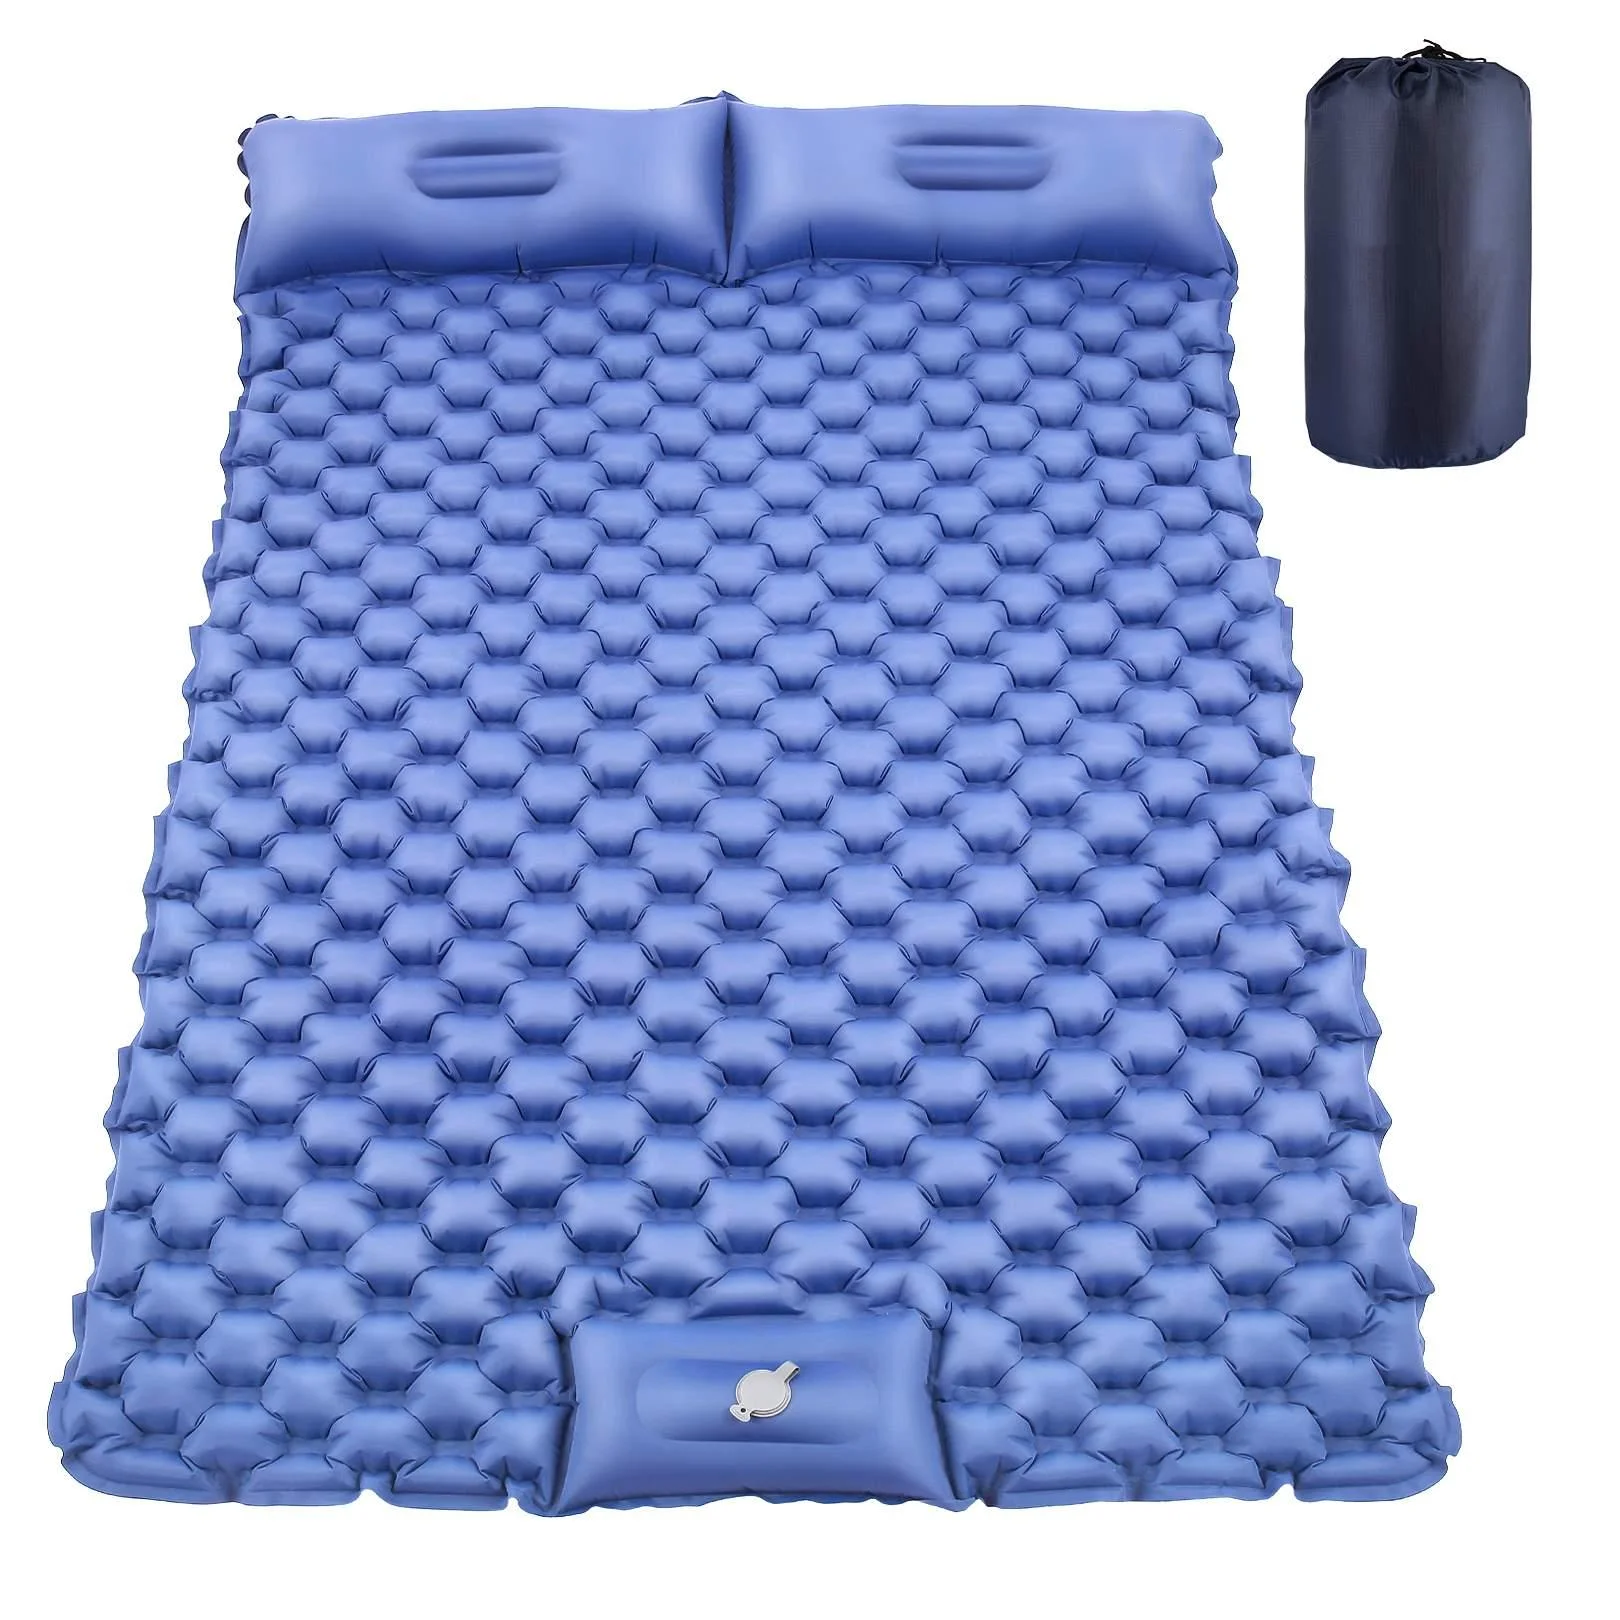 

Сверхлегкий двойной коврик для сна с воздушной подушкой, надувной коврик для пеших прогулок, путешествий, походов, голубой цвет